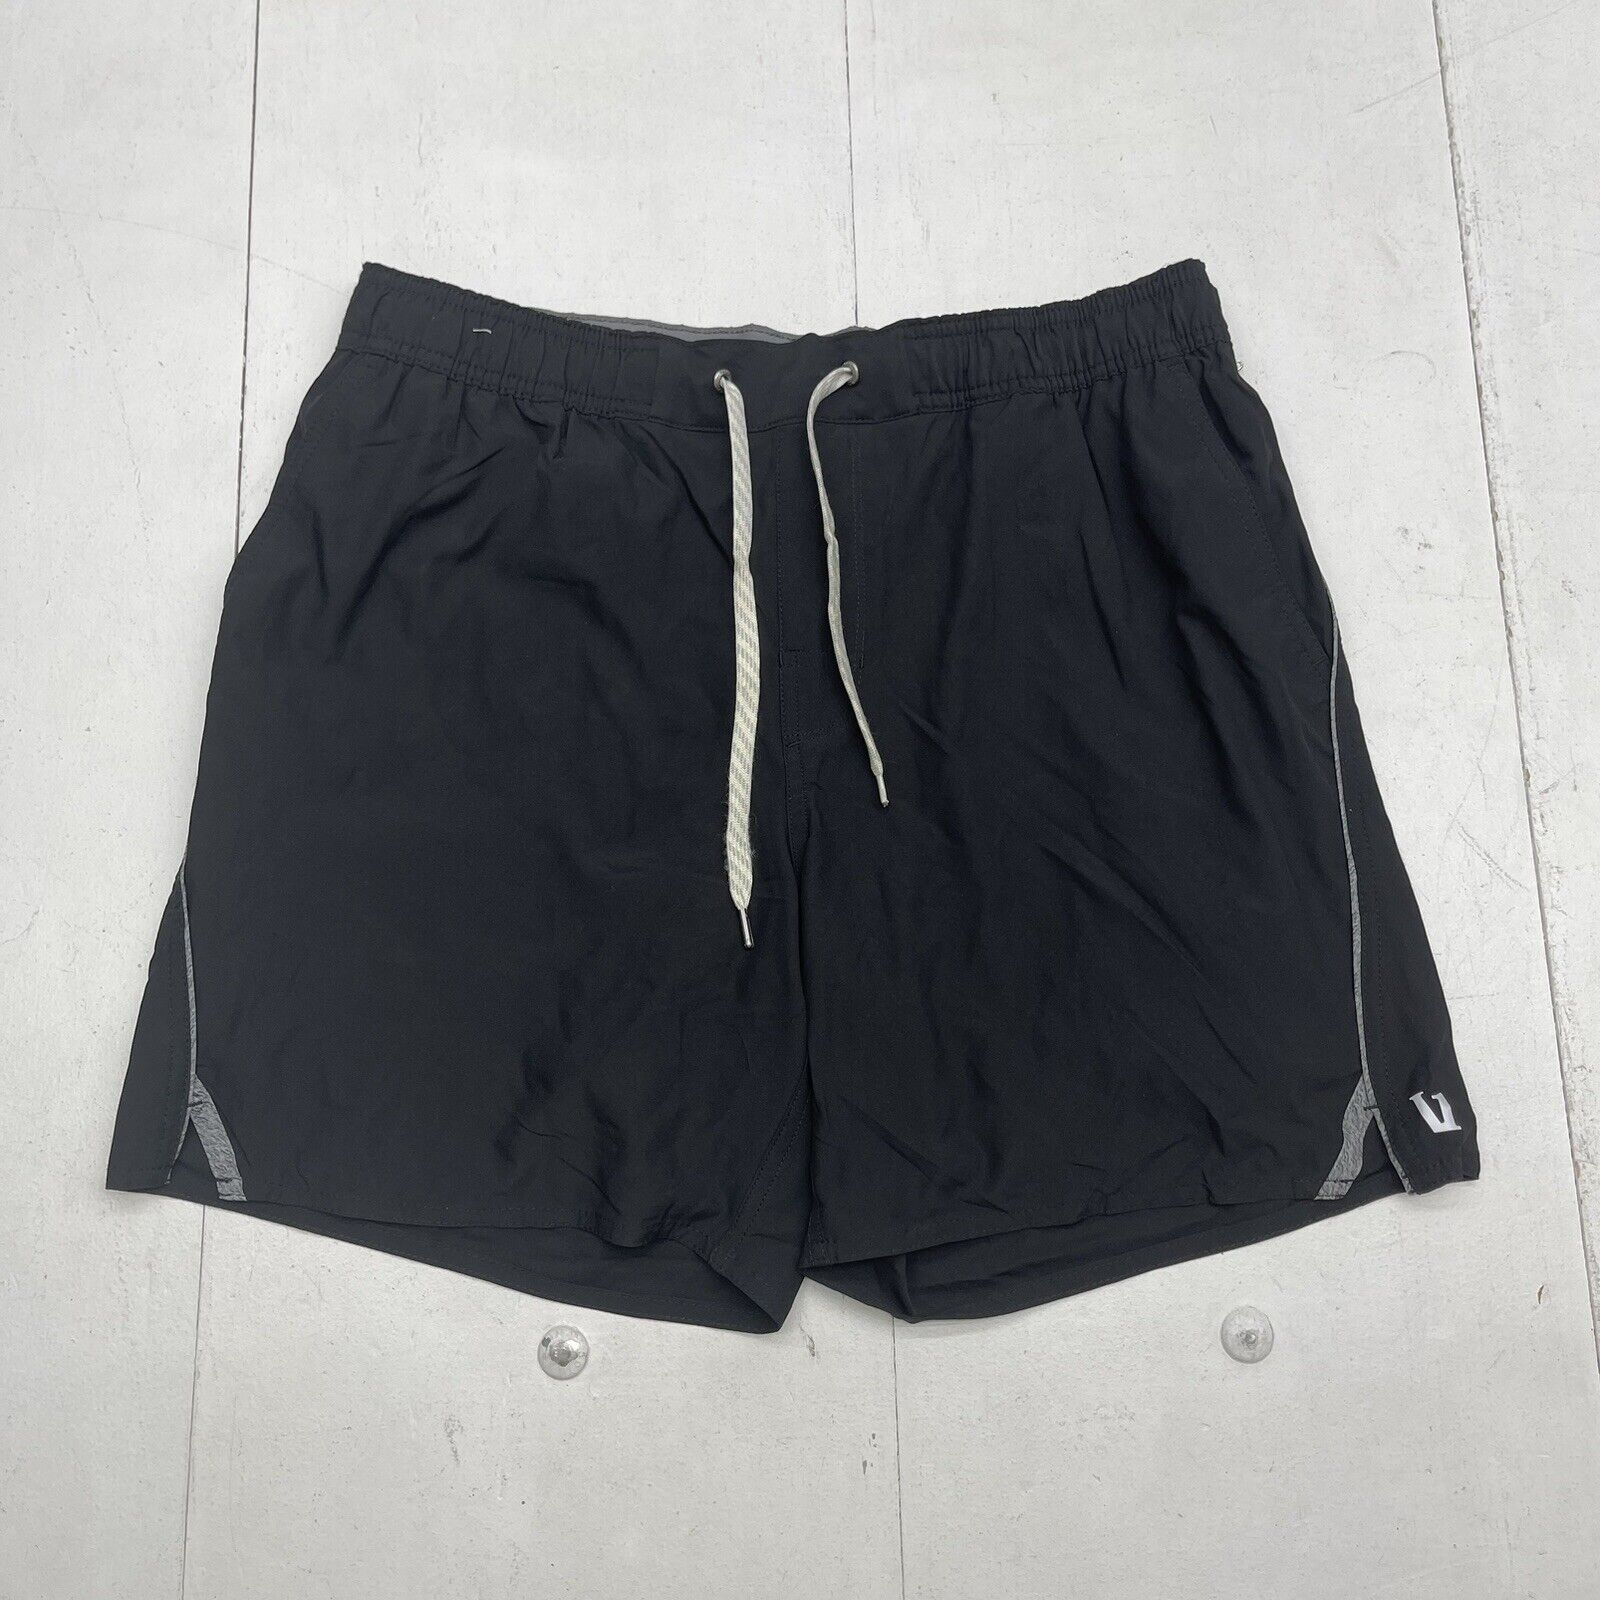 Vuori Black Trail Shorts Mens Size Large NWOT/ Defect $78